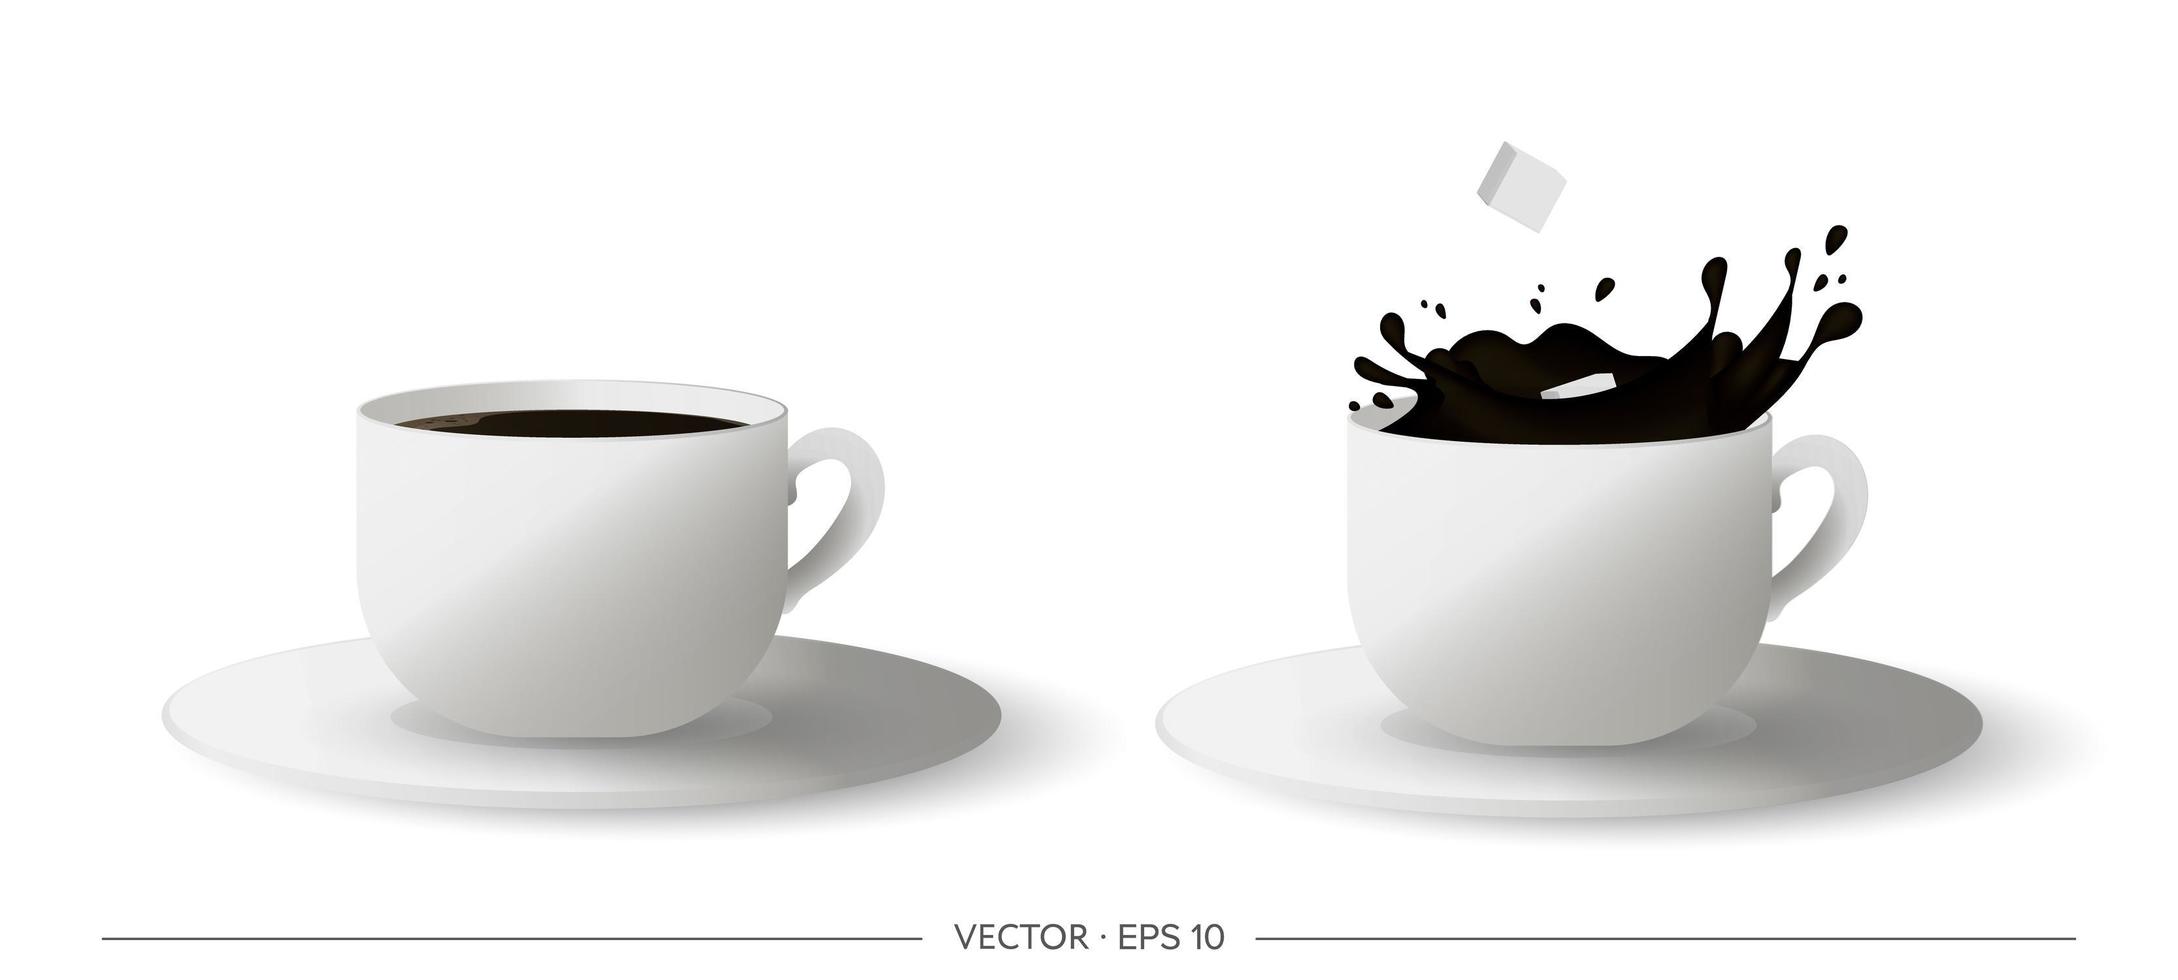 juego de taza de café realista. cubos de azúcar cayendo de una taza de café. ilustración vectorial vector